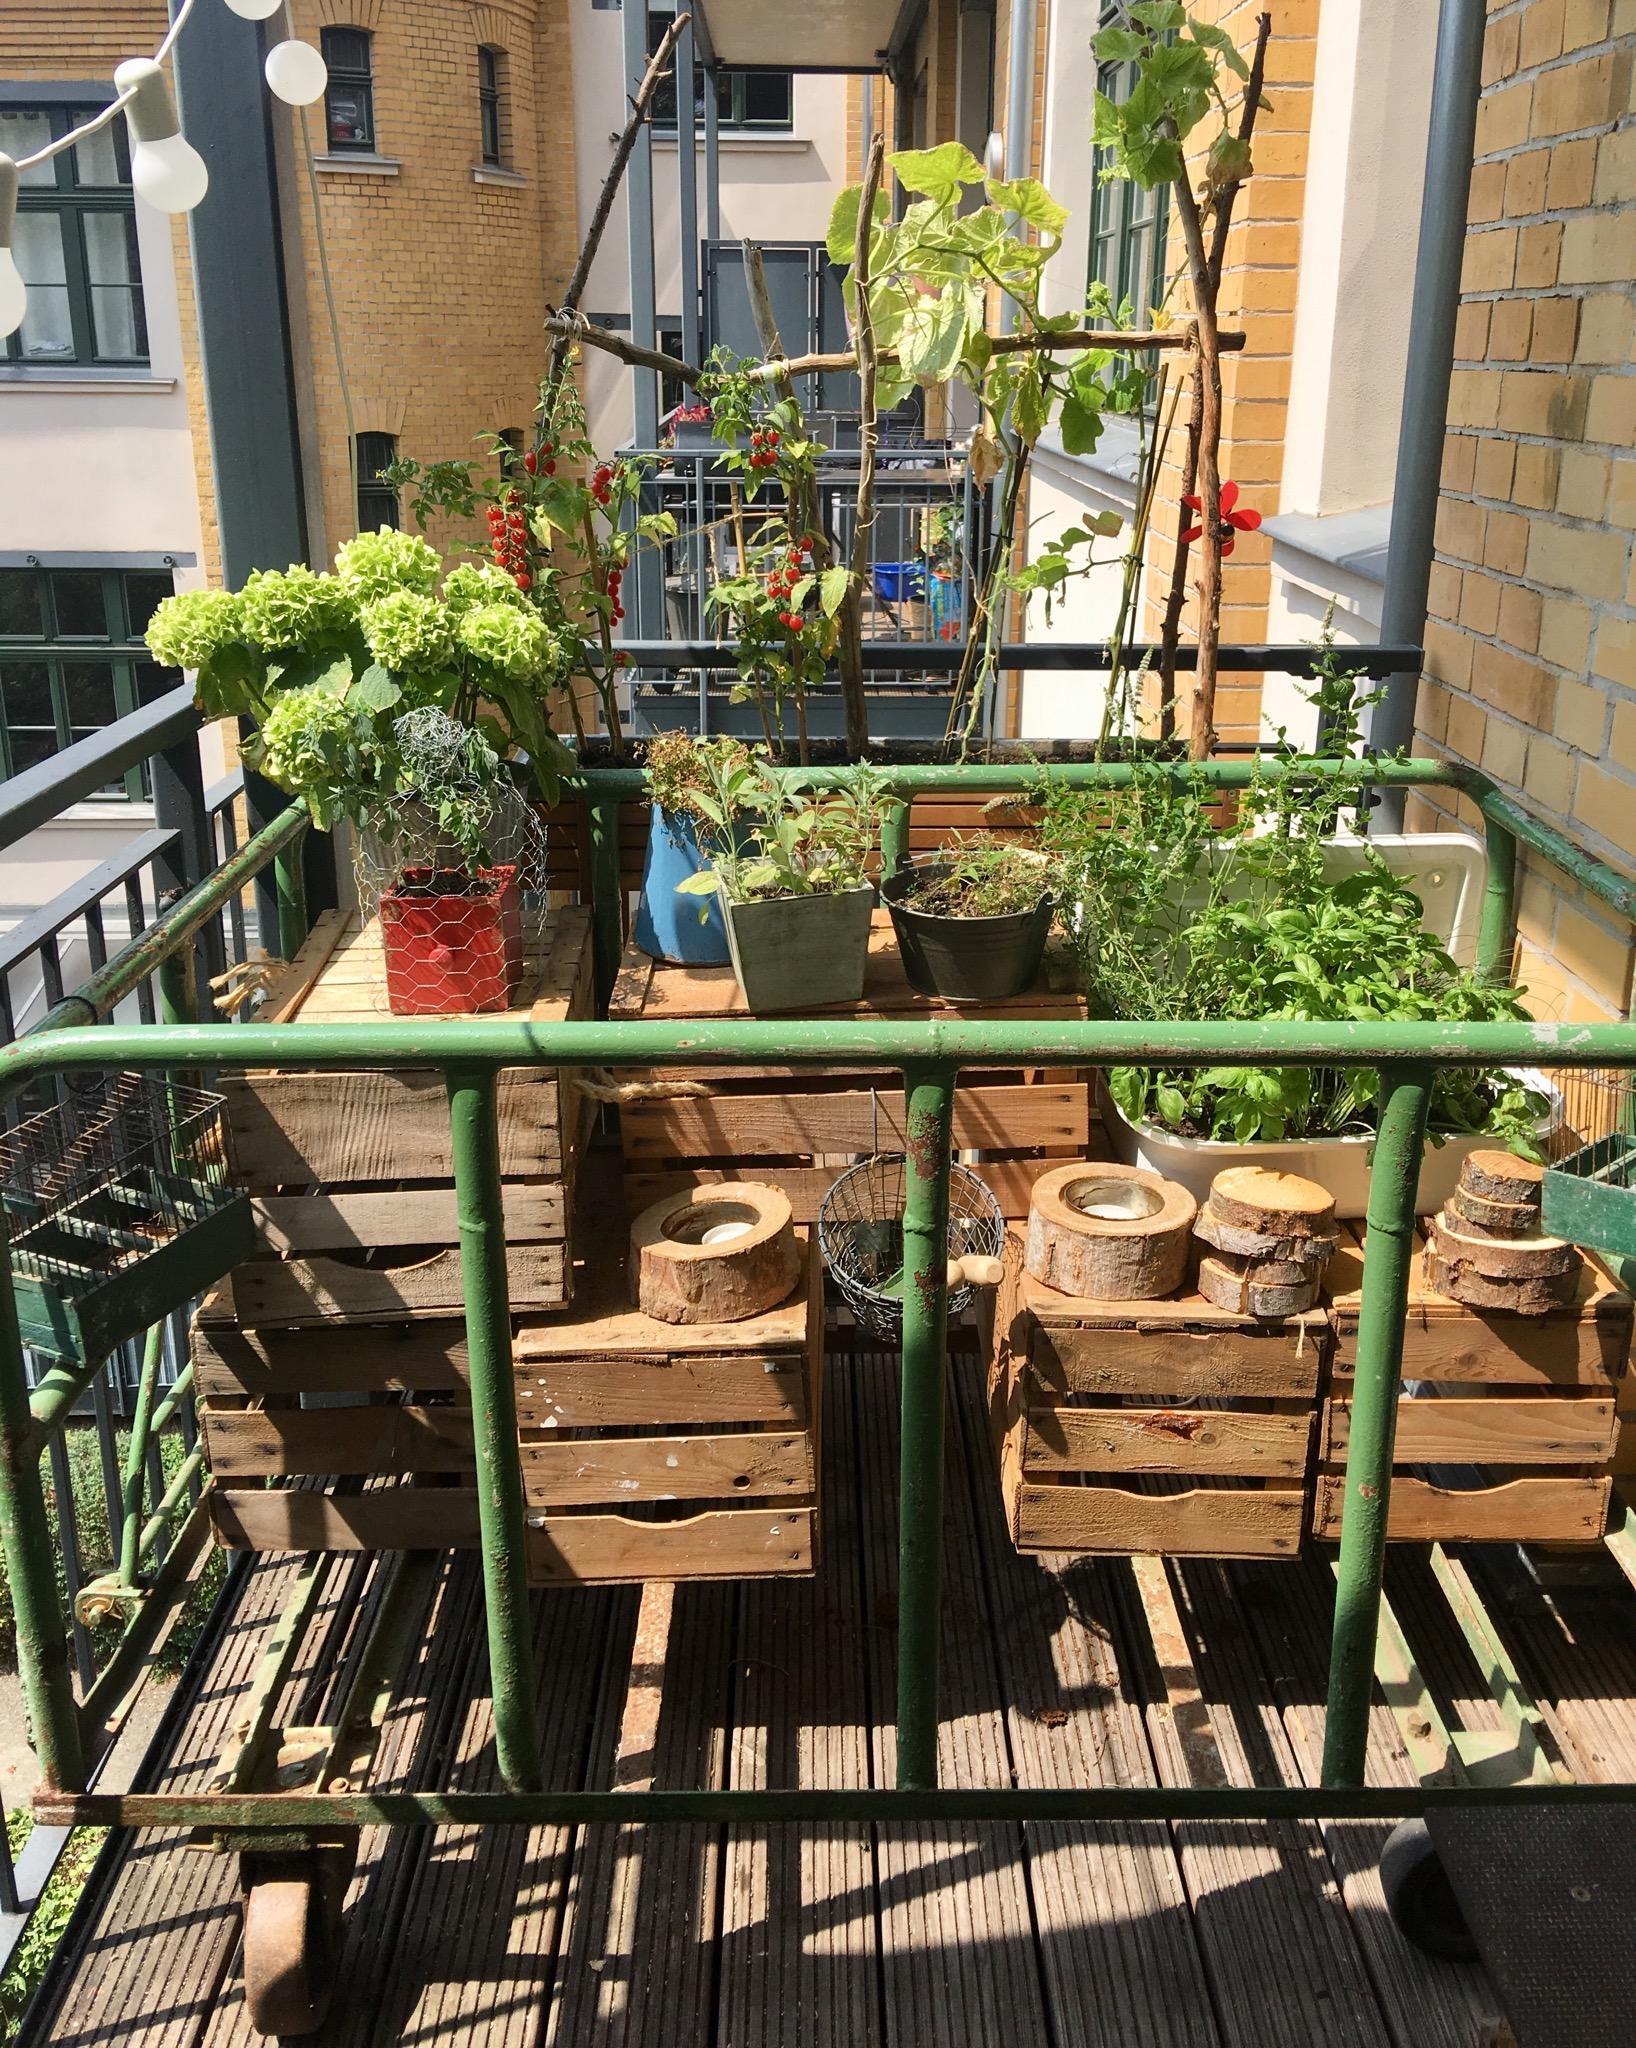 Auch ein Balkon kann sich wie ein Garten anfühlen🌱🌿
#urban#gardening#grün#pflanzen#industrial#obstkisten#transportwagen